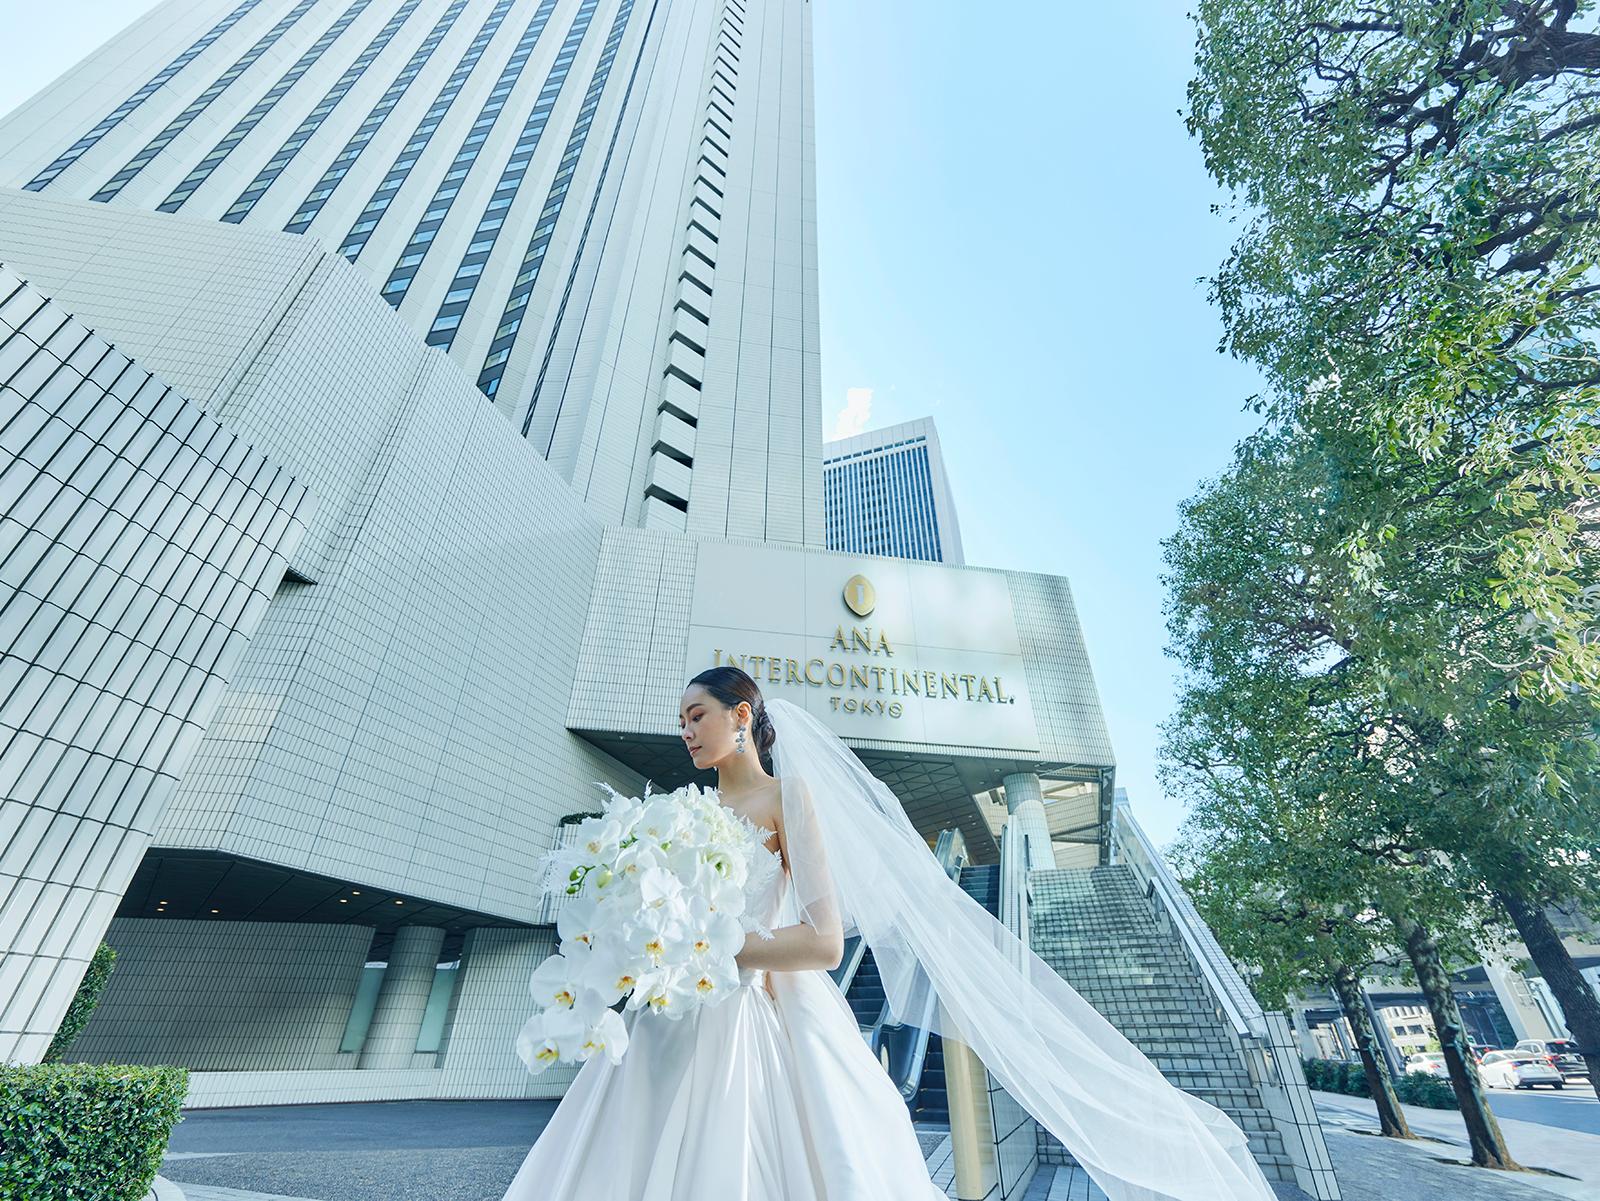 ＡＮＡインターコンチネンタルホテル東京で結婚式 | マイナビウエディング